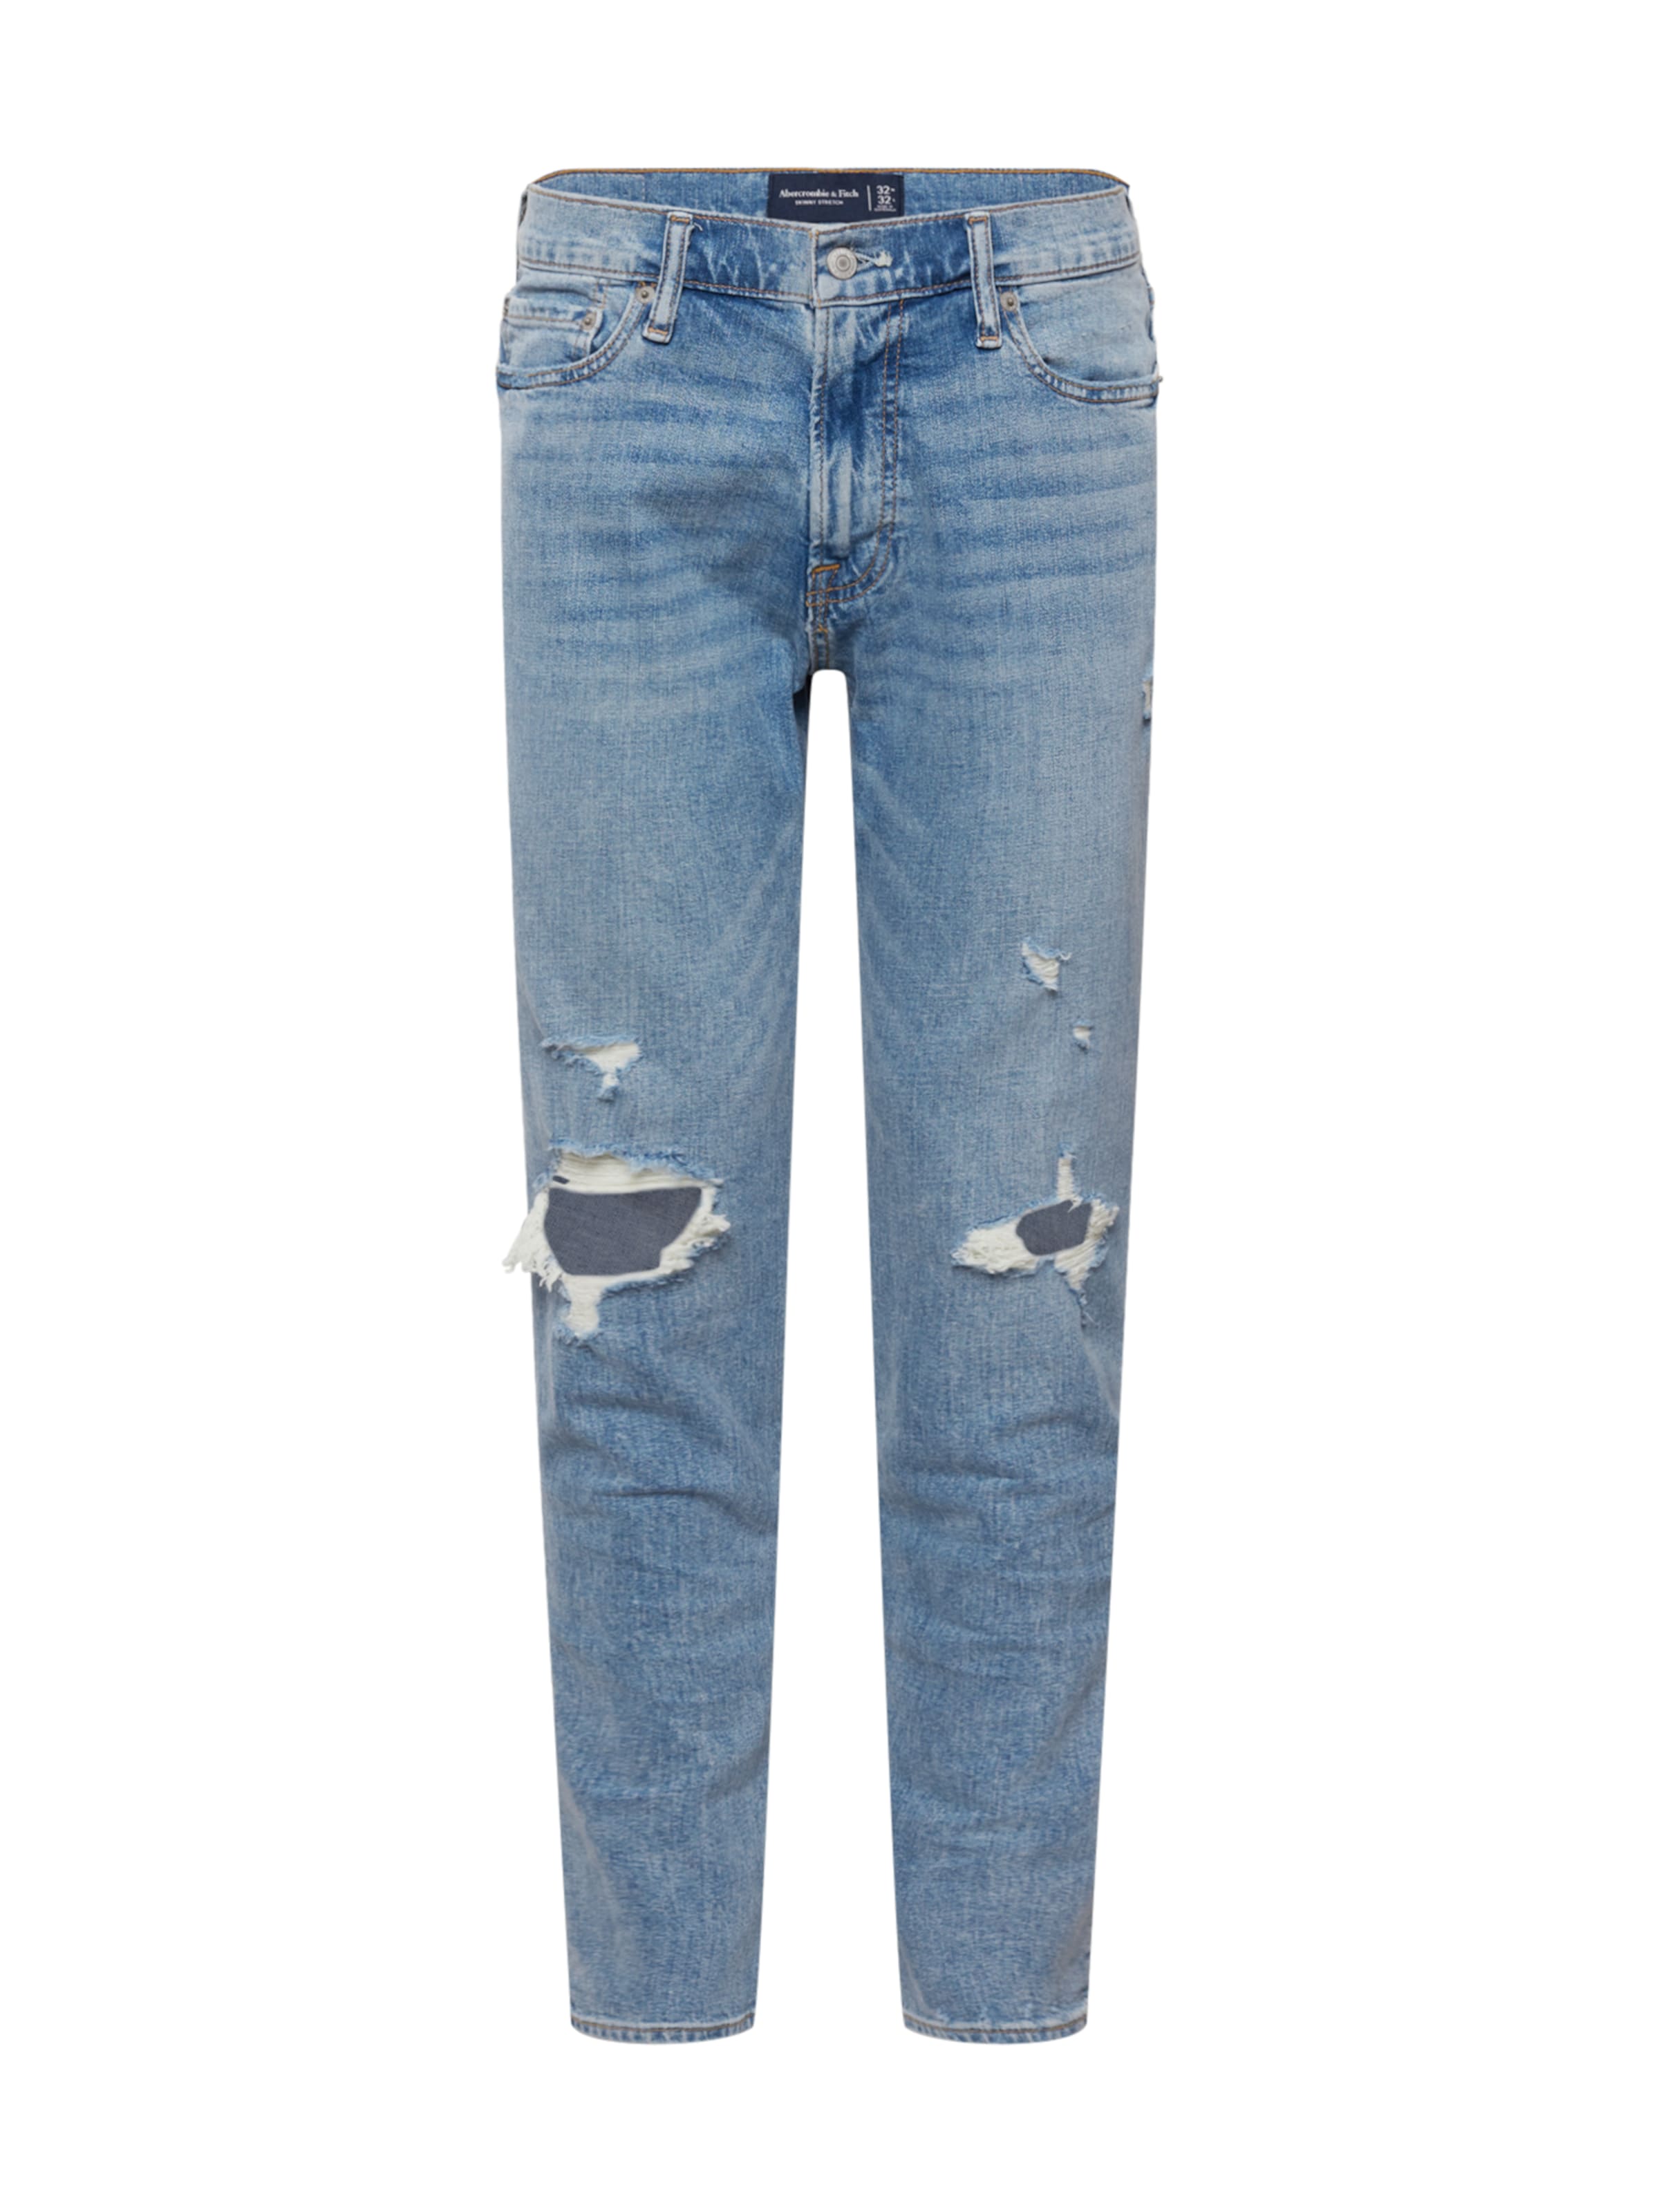 Jeans mRSjr Abercrombie & Fitch Jeans in Blu 